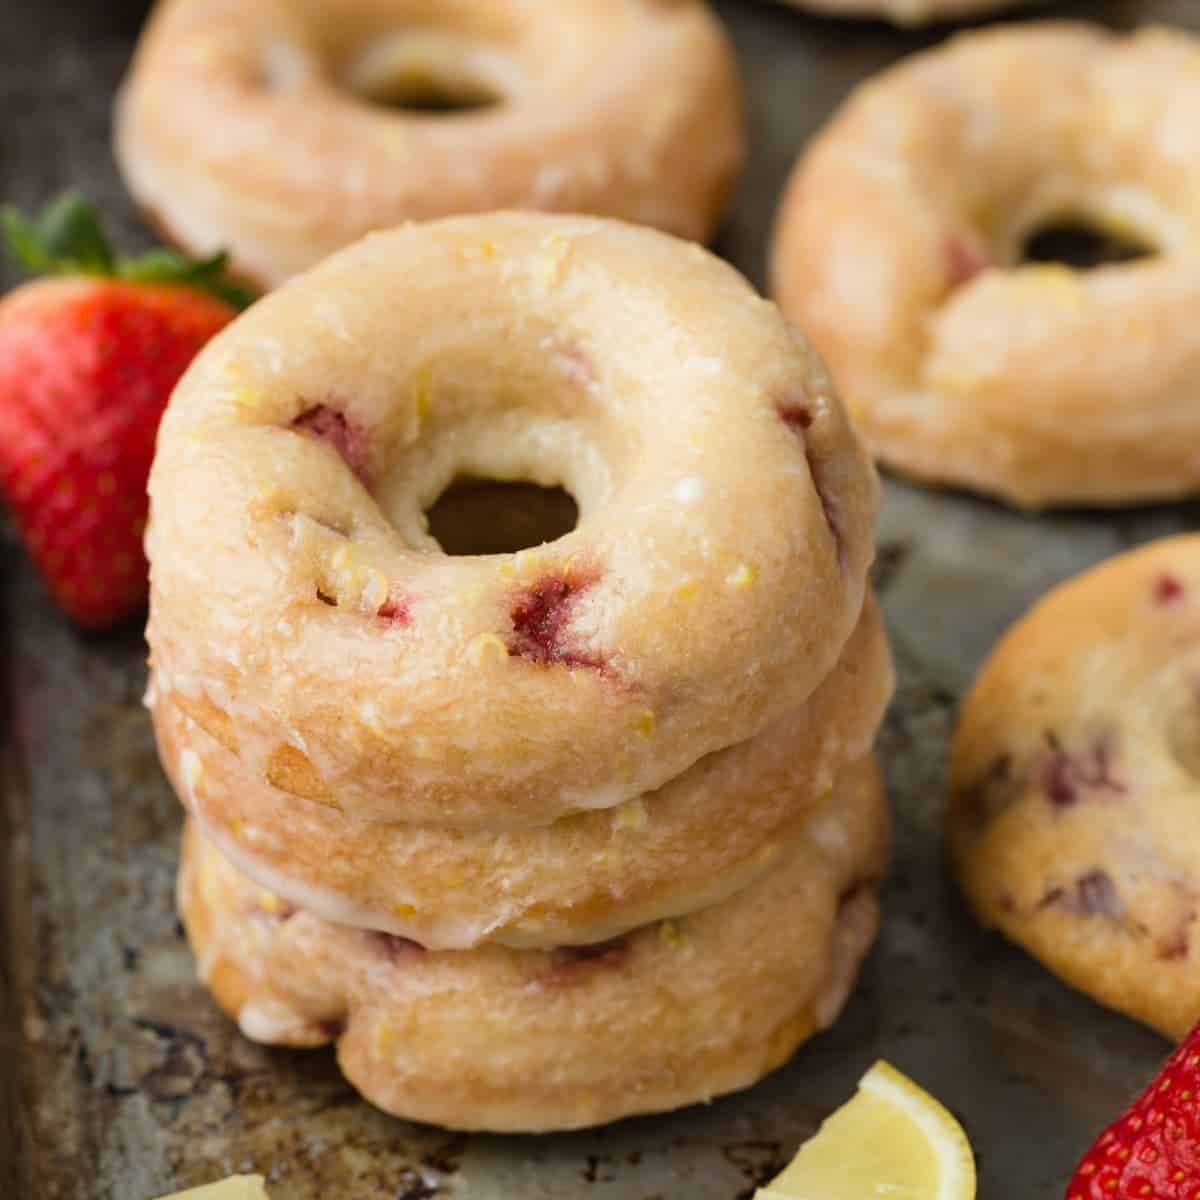 Strawberry Donuts with Lemon Glaze